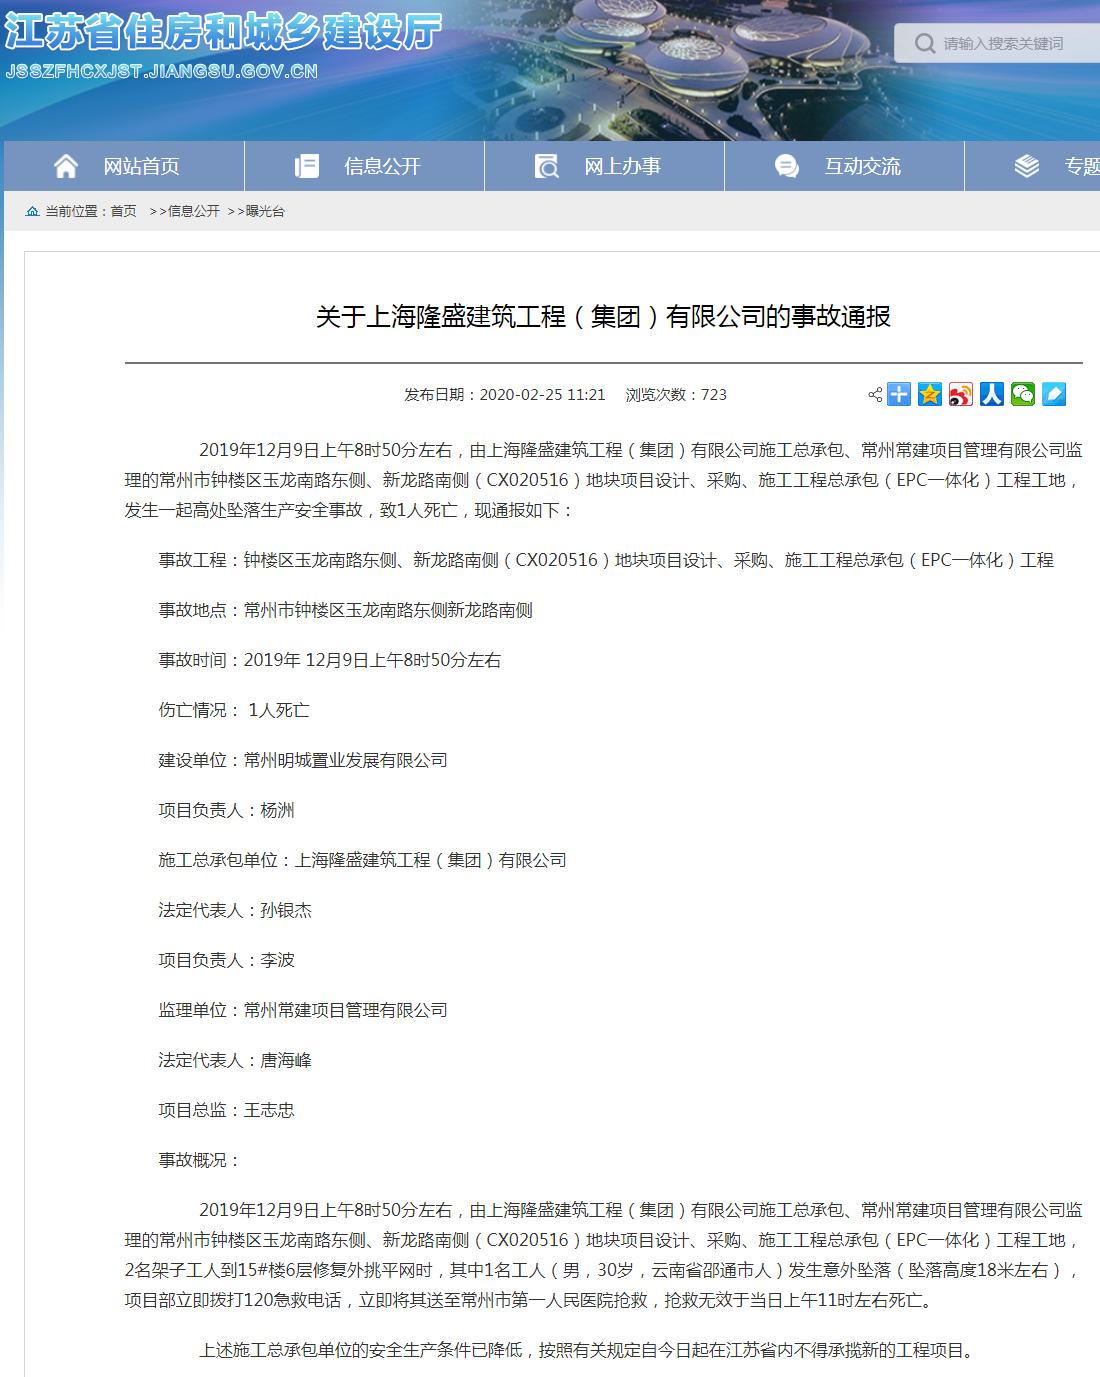 上海隆盛建筑工程(集团)有限公司常州一工程发生事故致1死 被禁承揽新工程